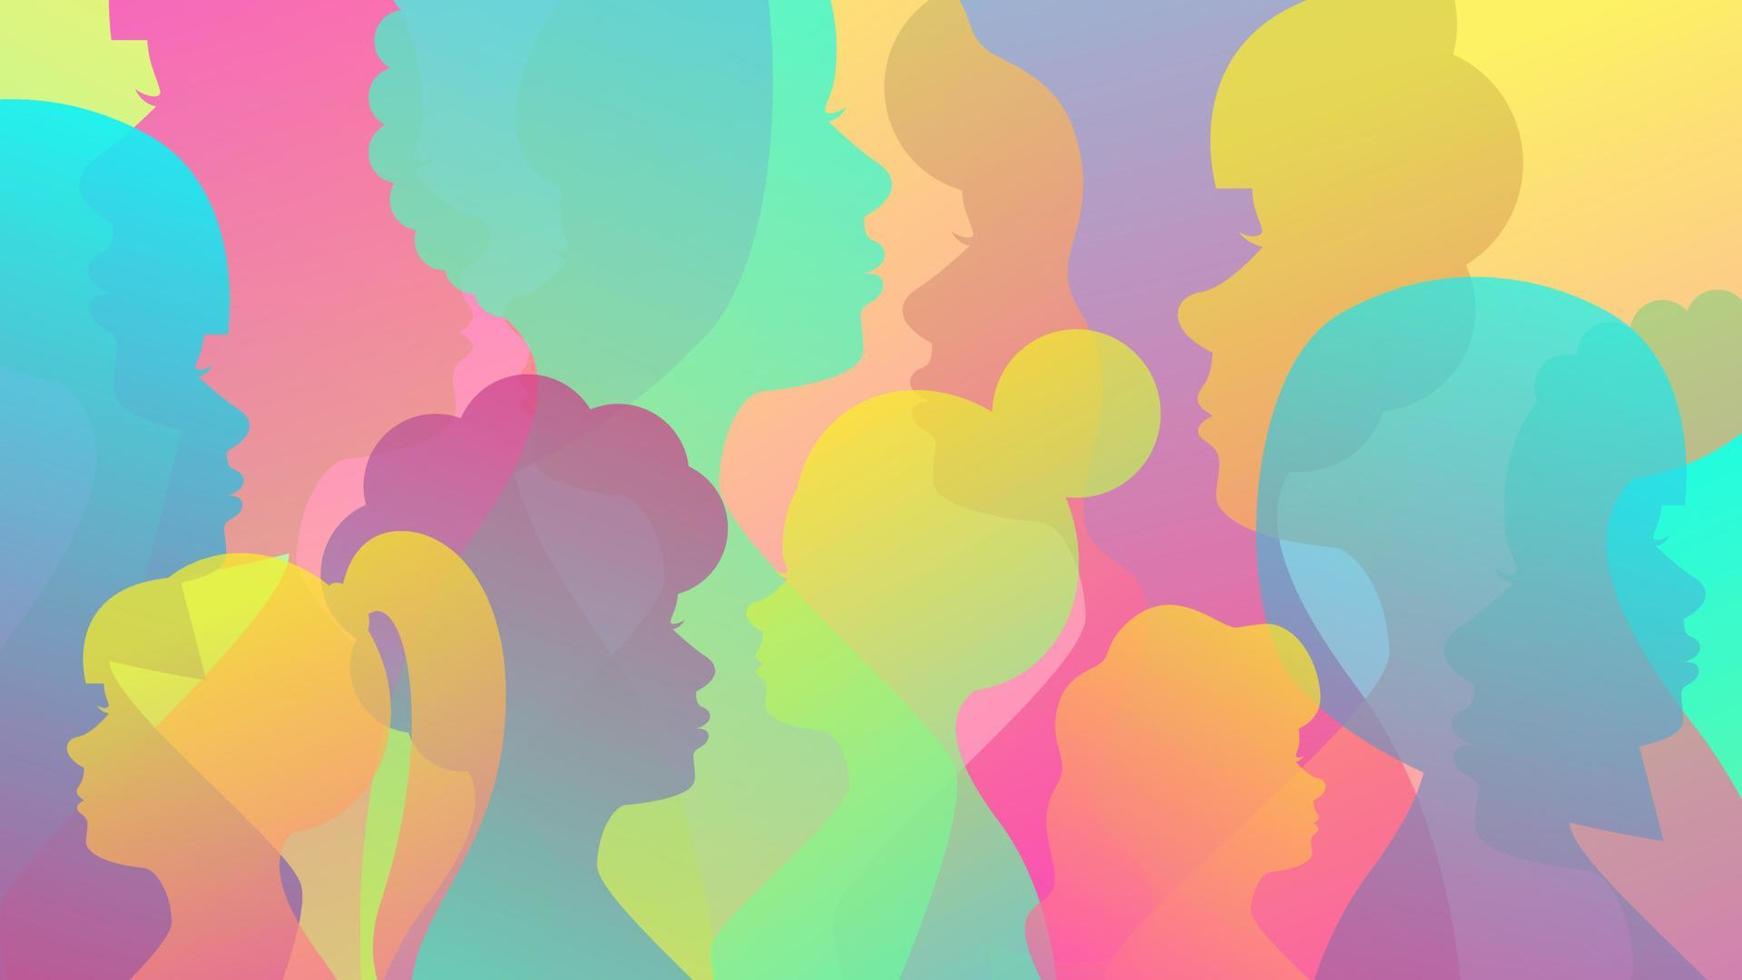 sfondo colorato da sagome femminili. concetto di diversità, femminismo, giornata internazionale della donna. illustrazione di riserva di vettore. vettore